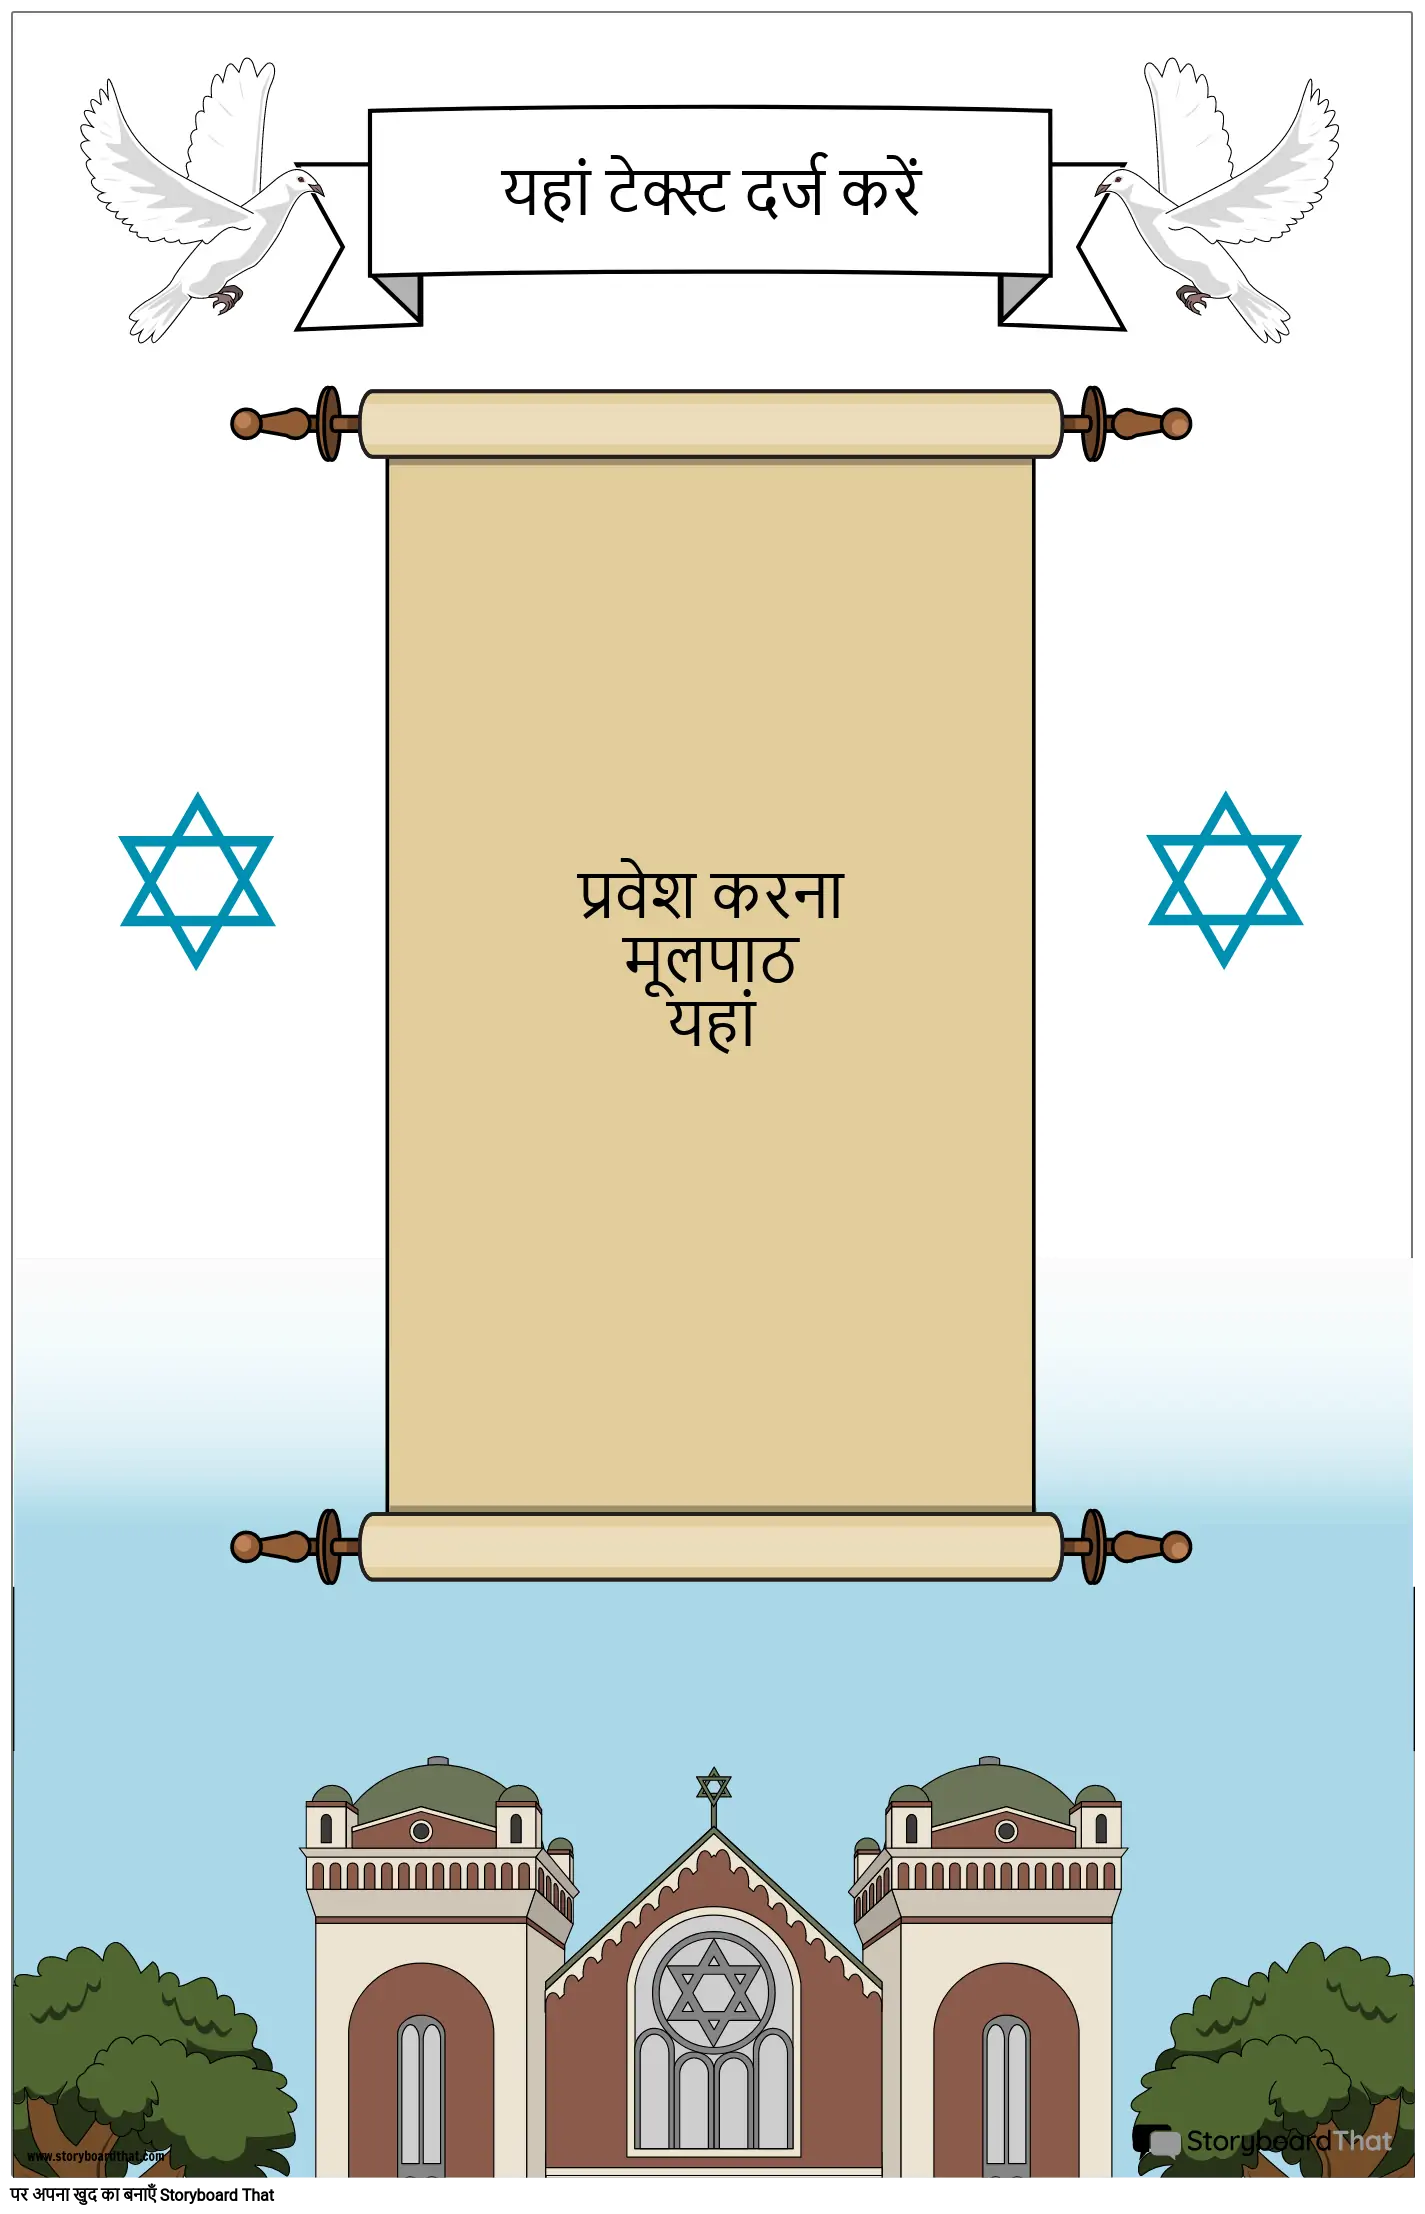 स्क्रॉल के साथ यहूदी पोस्टर